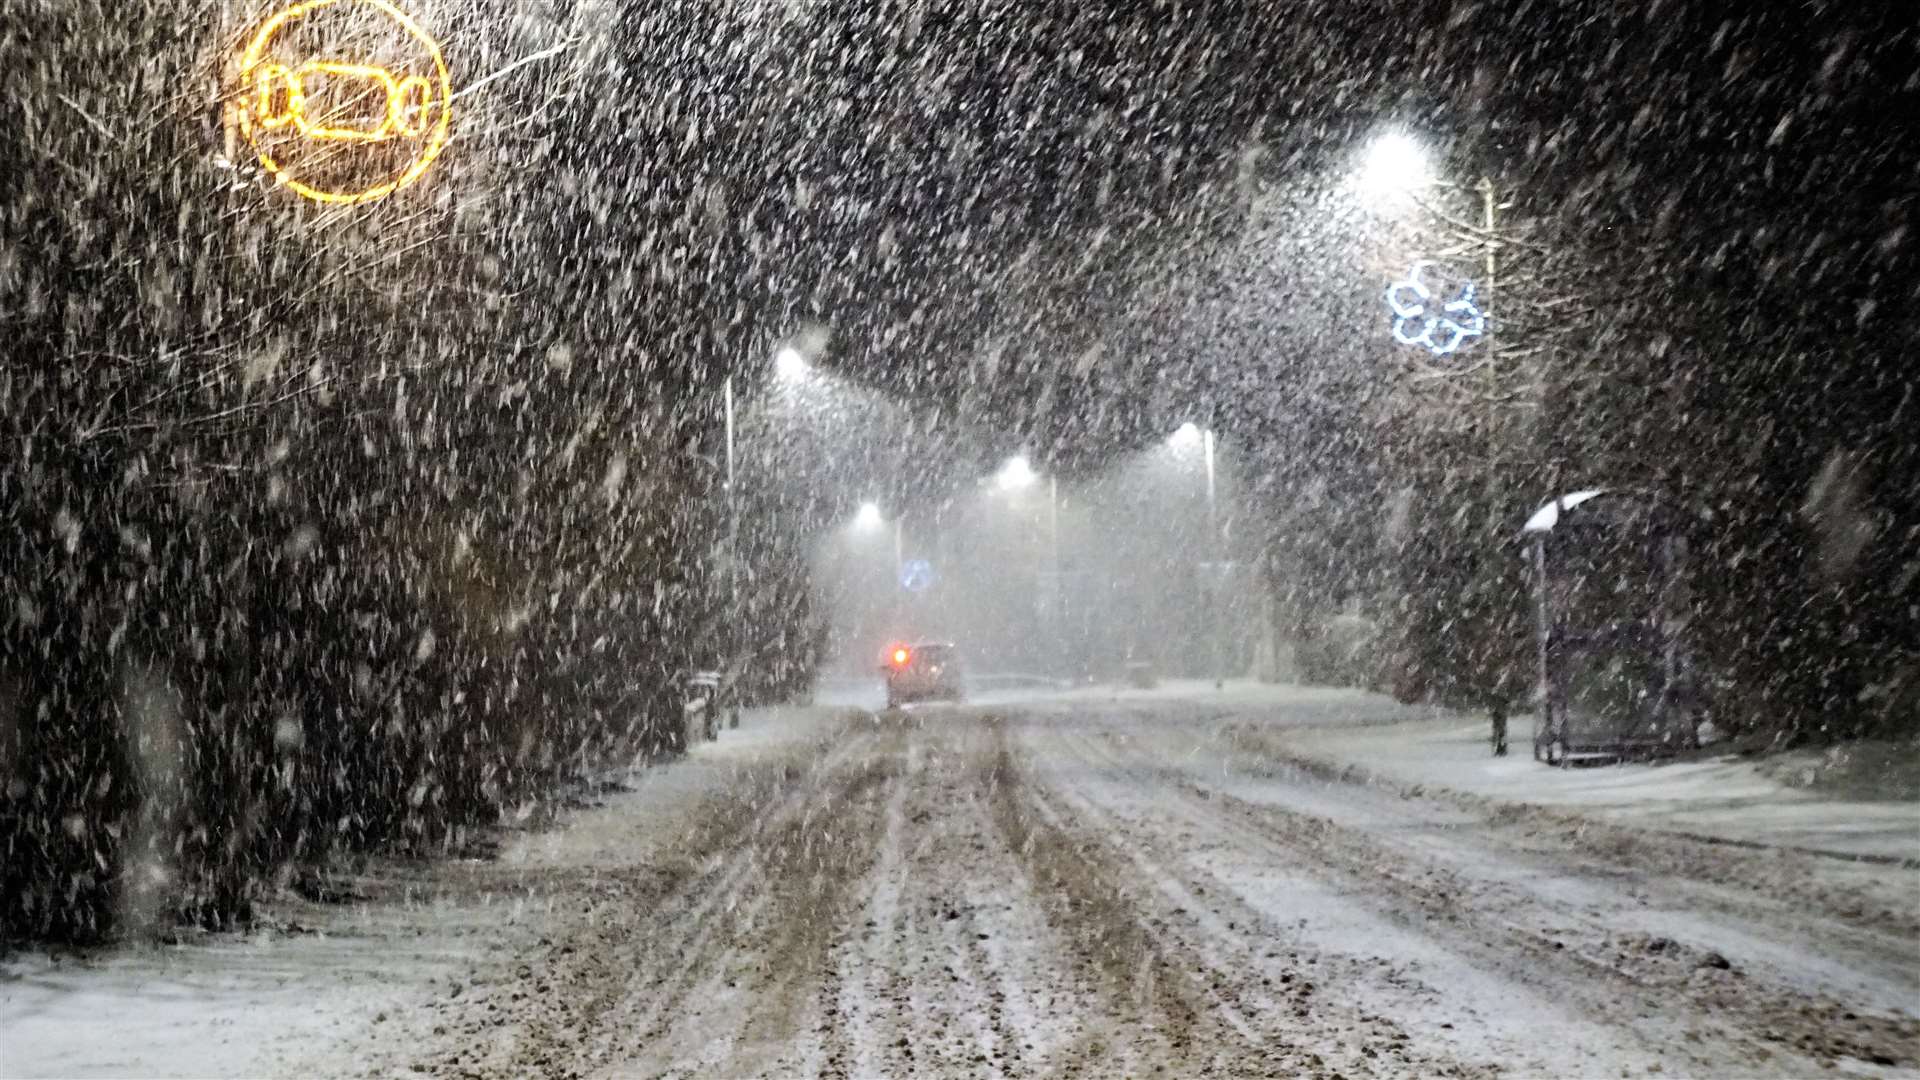 A blizzard in Watten last night. Picture: DGS